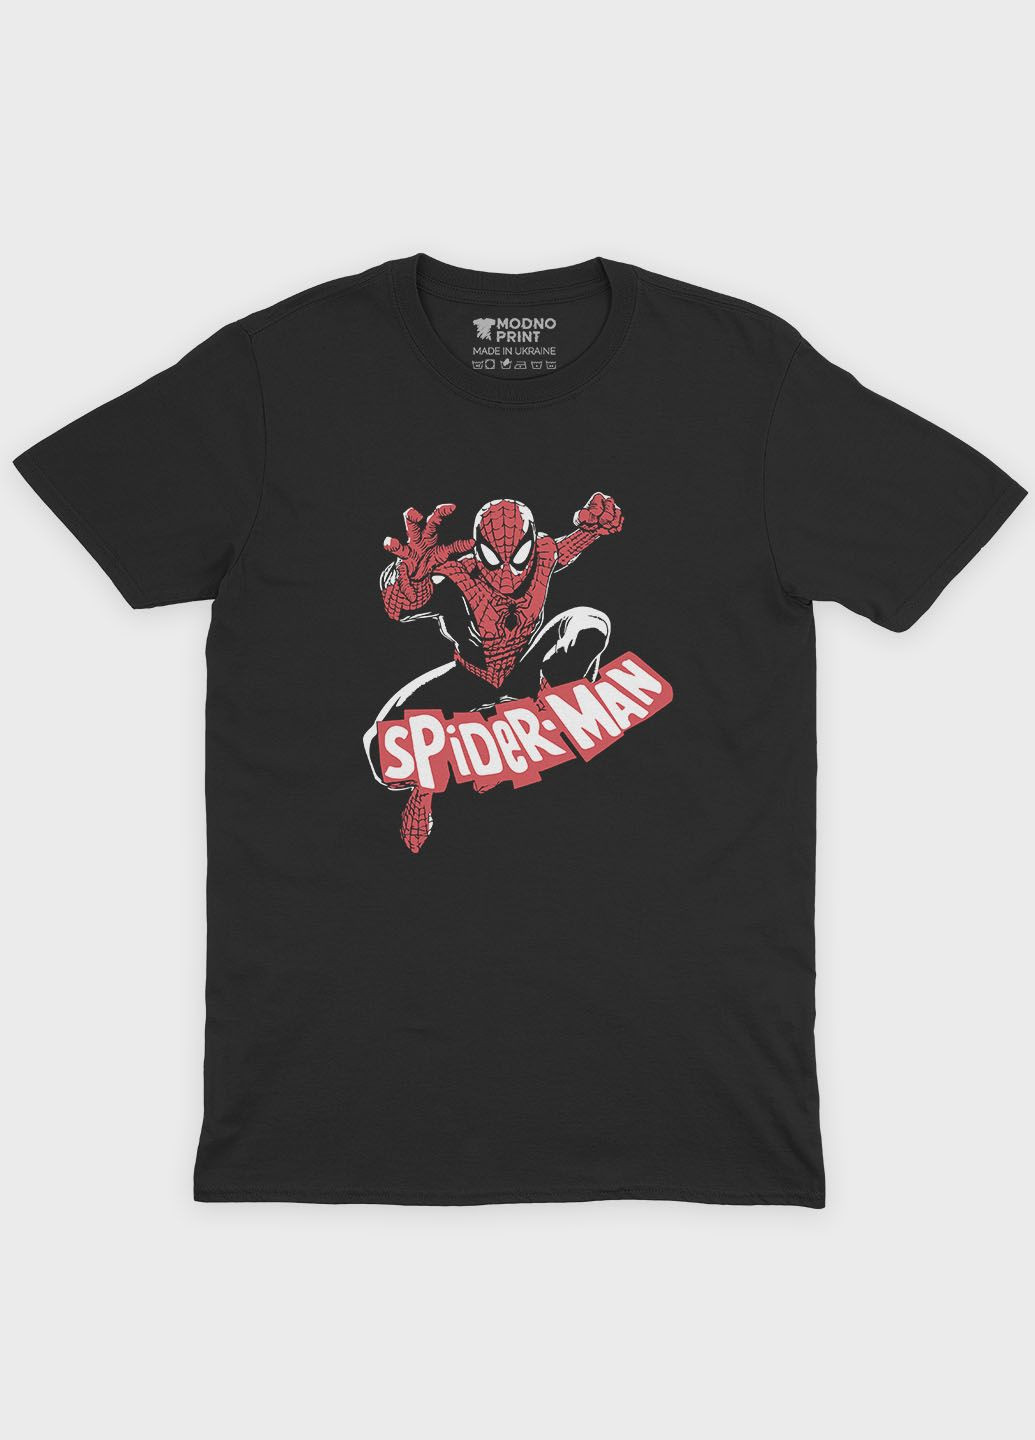 Чорна демісезонна футболка для хлопчика з принтом супергероя - людина-павук (ts001-1-bl-006-014-077-b) Modno